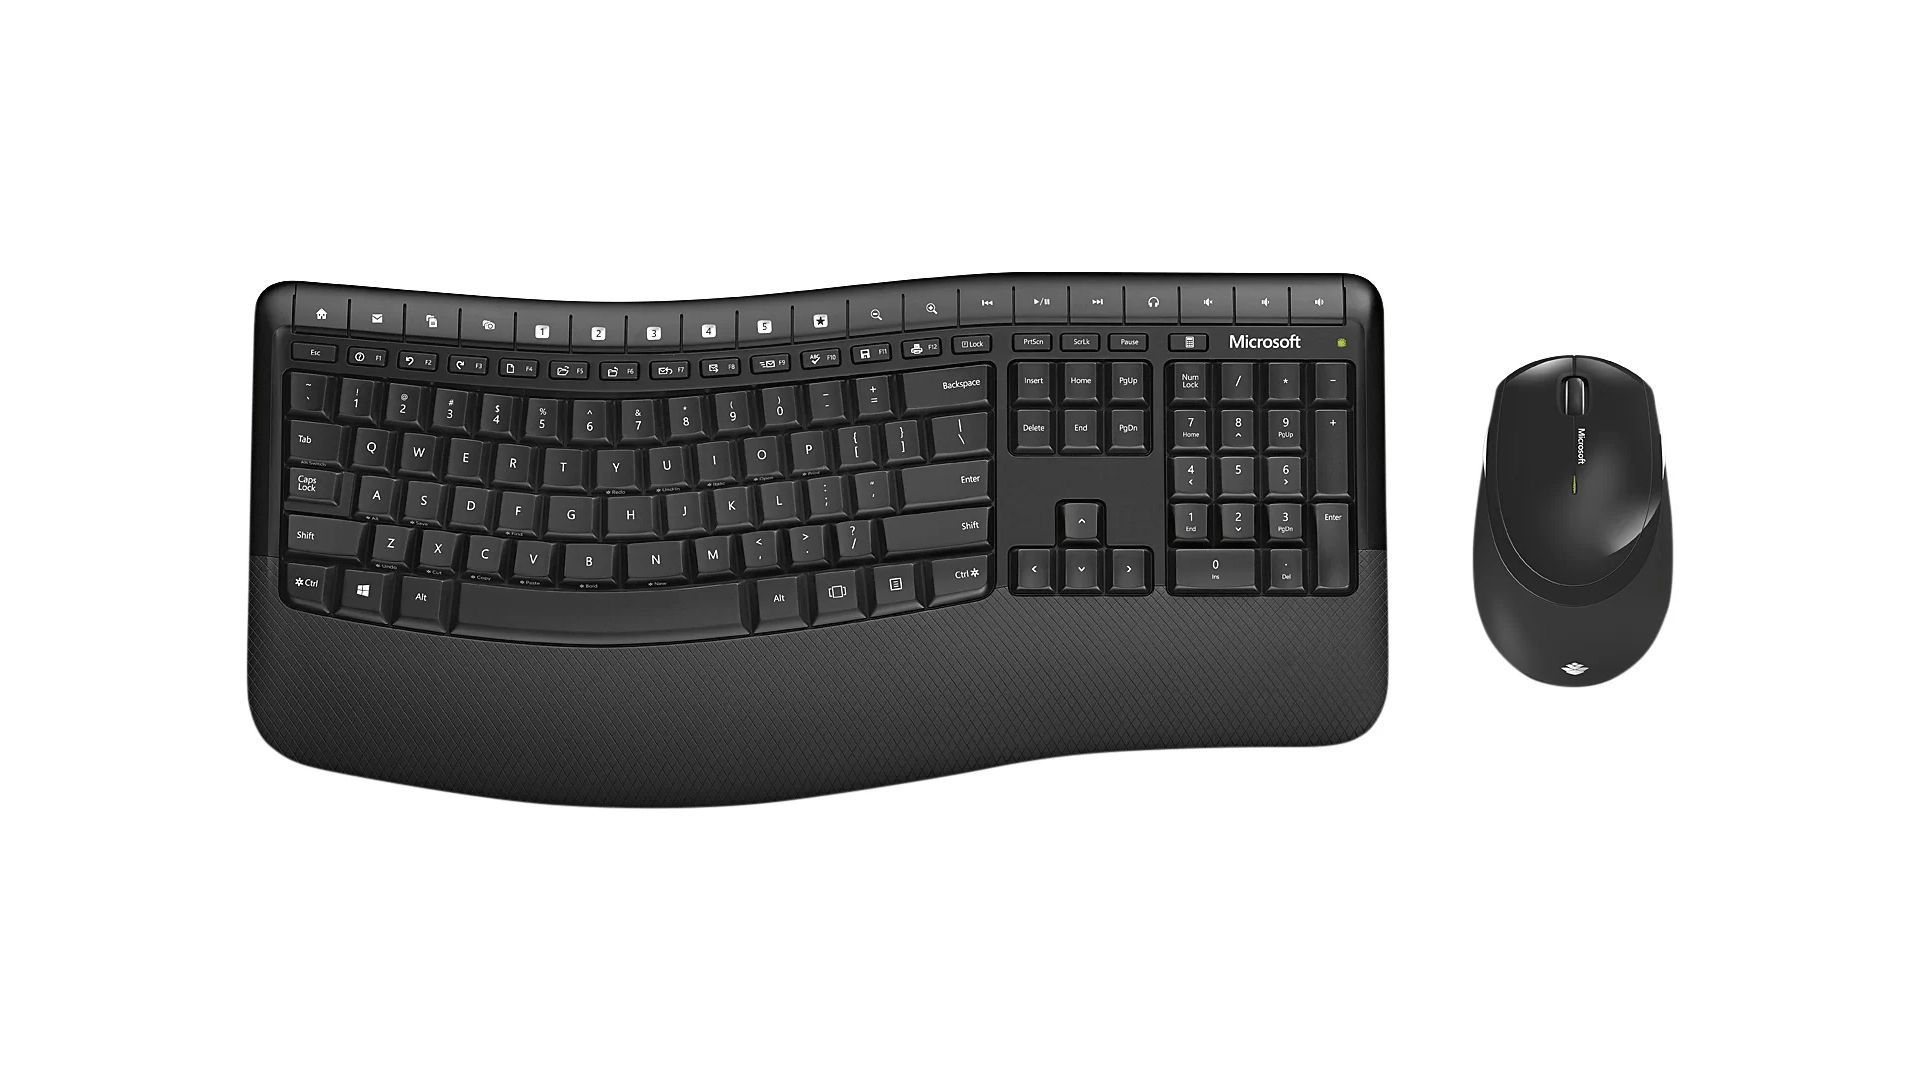 Formato do teclado gera um conforto que proporciona maior qualidade no uso. (Foto: Divulgação/Microsoft)